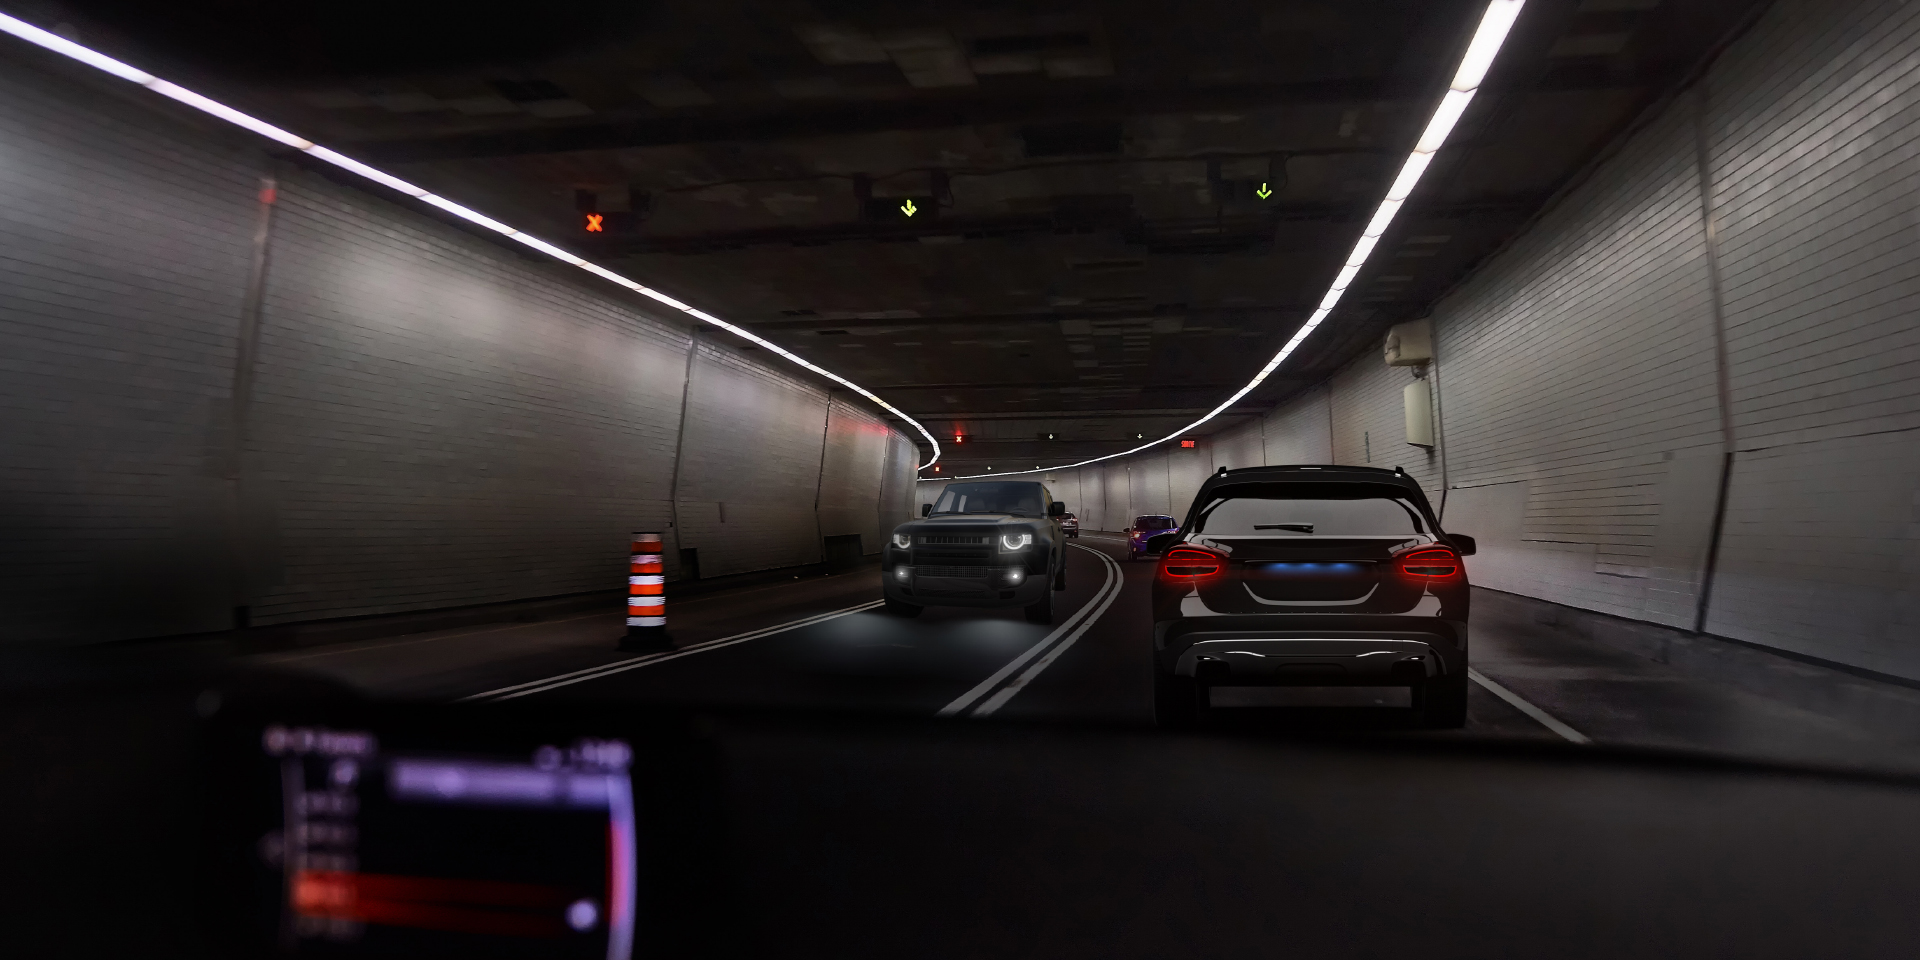 To billeder set gennem en bilists øjne i en tunnel med modkørende trafik. Det ene viser blændende lys fra bilen og tunnellens belysning, og det andet viser en reduceret blænding.